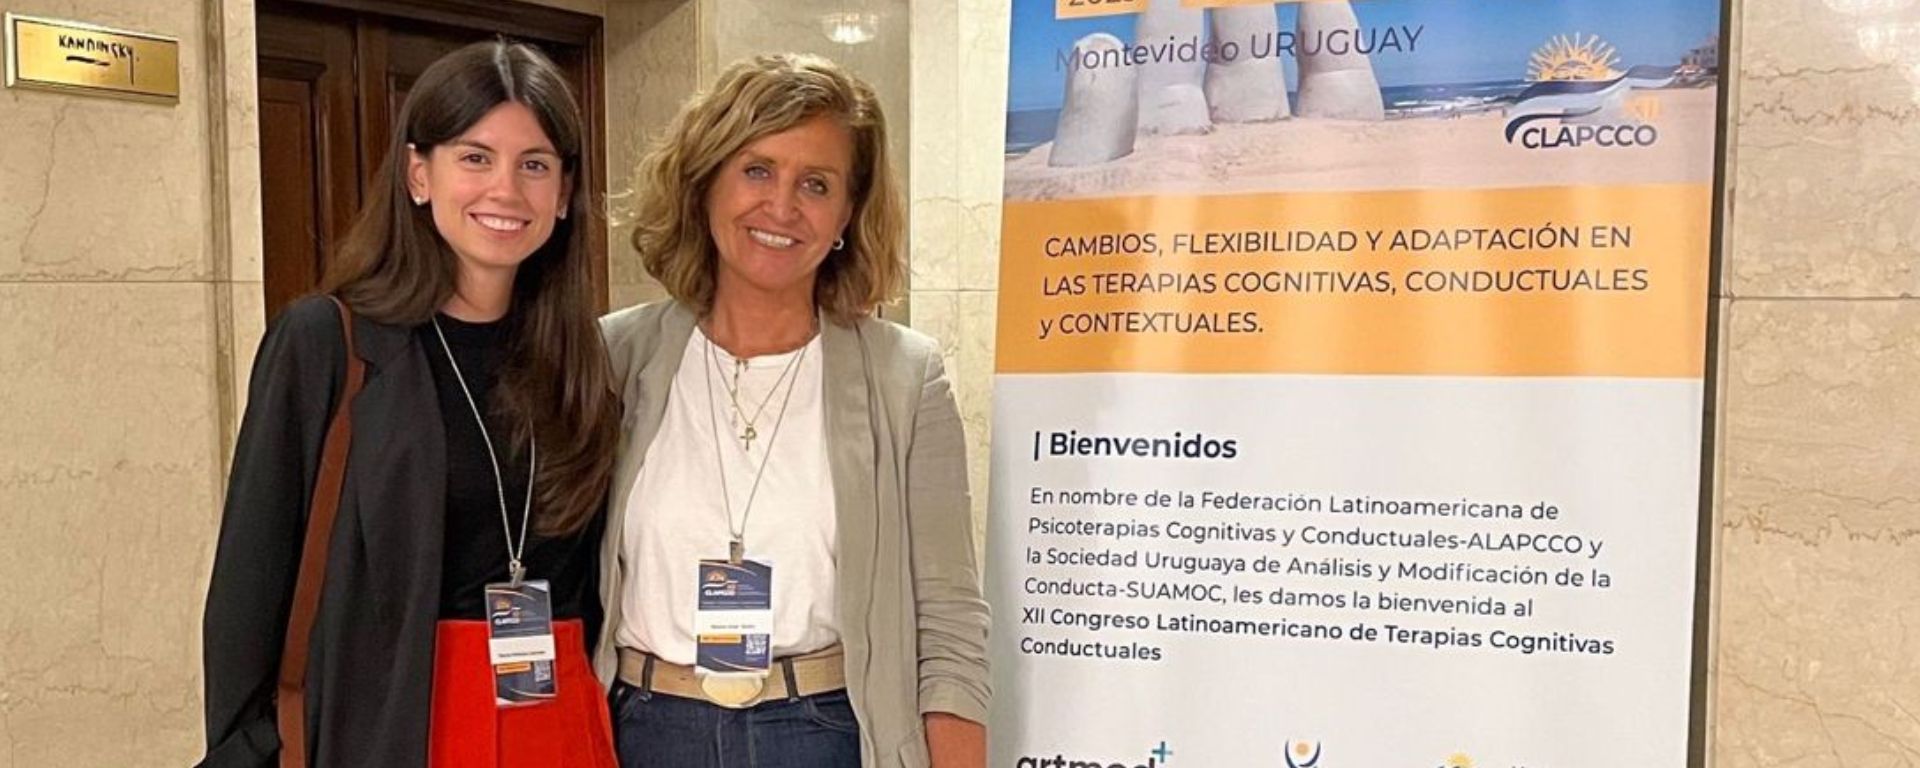 Mónica Larrosa y María José Soler posan con afiche del XII Congreso Latinoamericano de Terapias Cognitivas